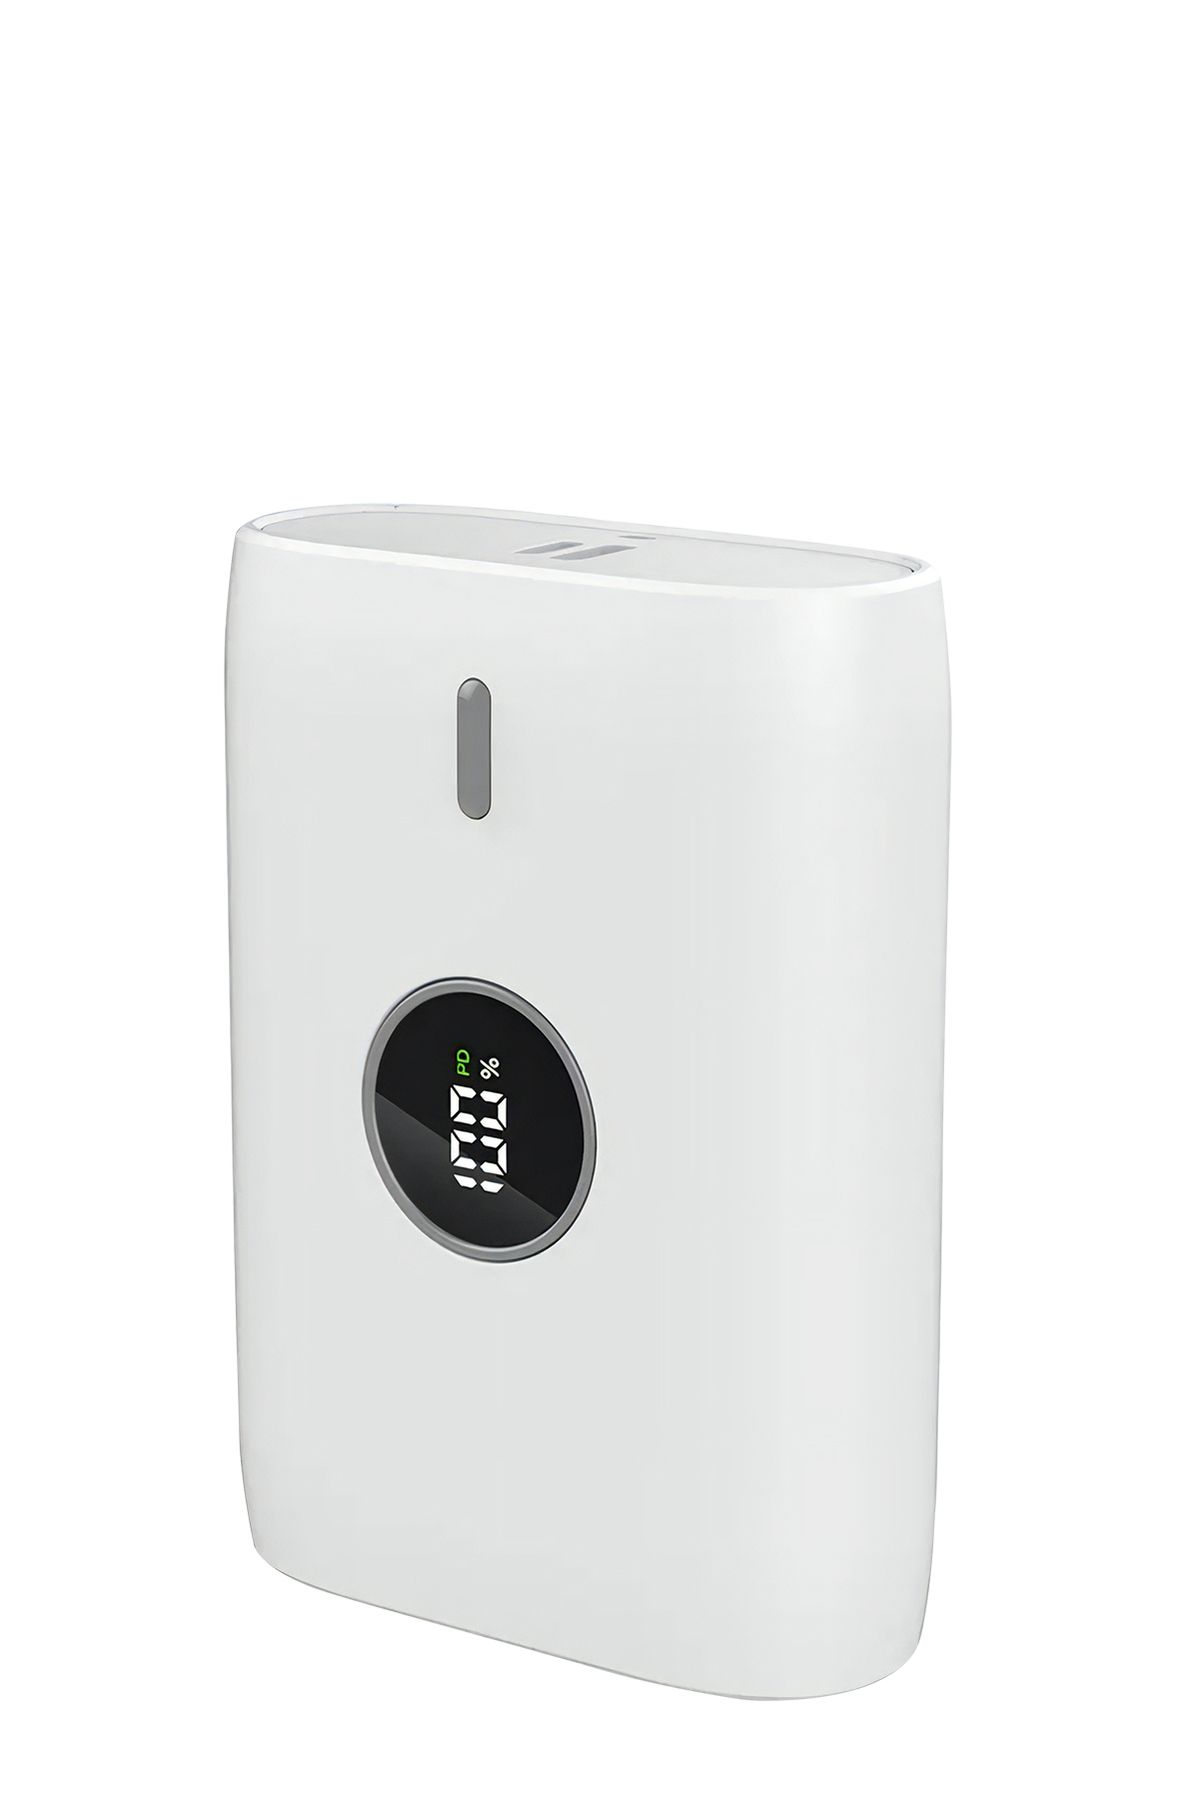 Woyax By Deji Powerbank Hızlı 10000mah 22.5w Taşınabilir Şarj Cihazı - Beyaz